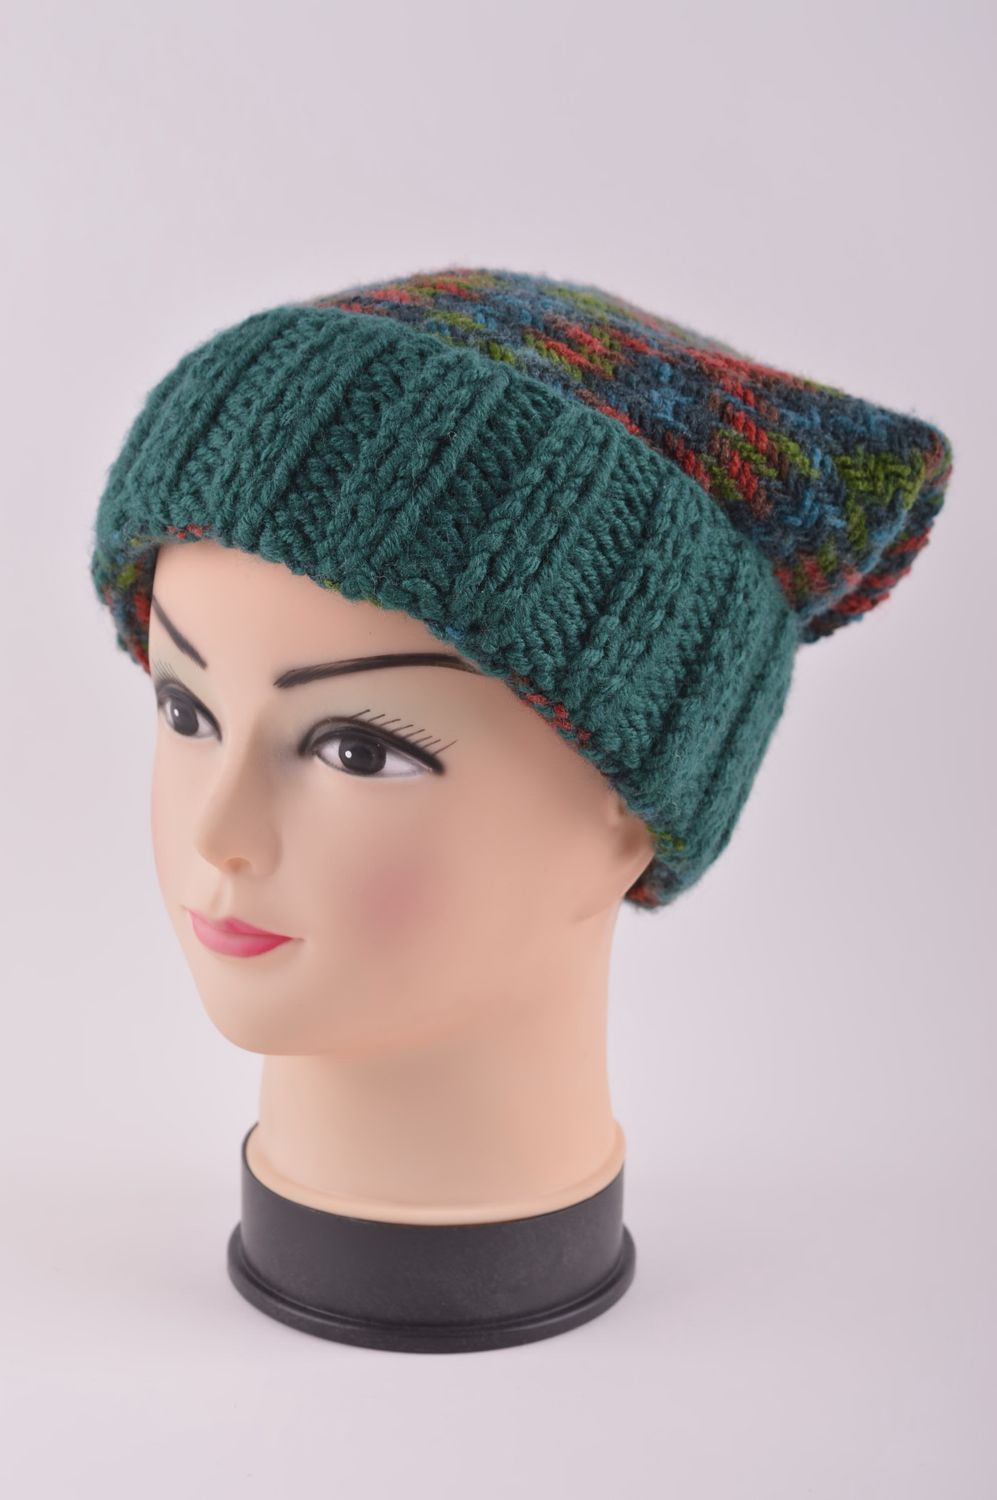 Knitted hat handmade knitted accessories warm winter hat women woolen hat photo 2